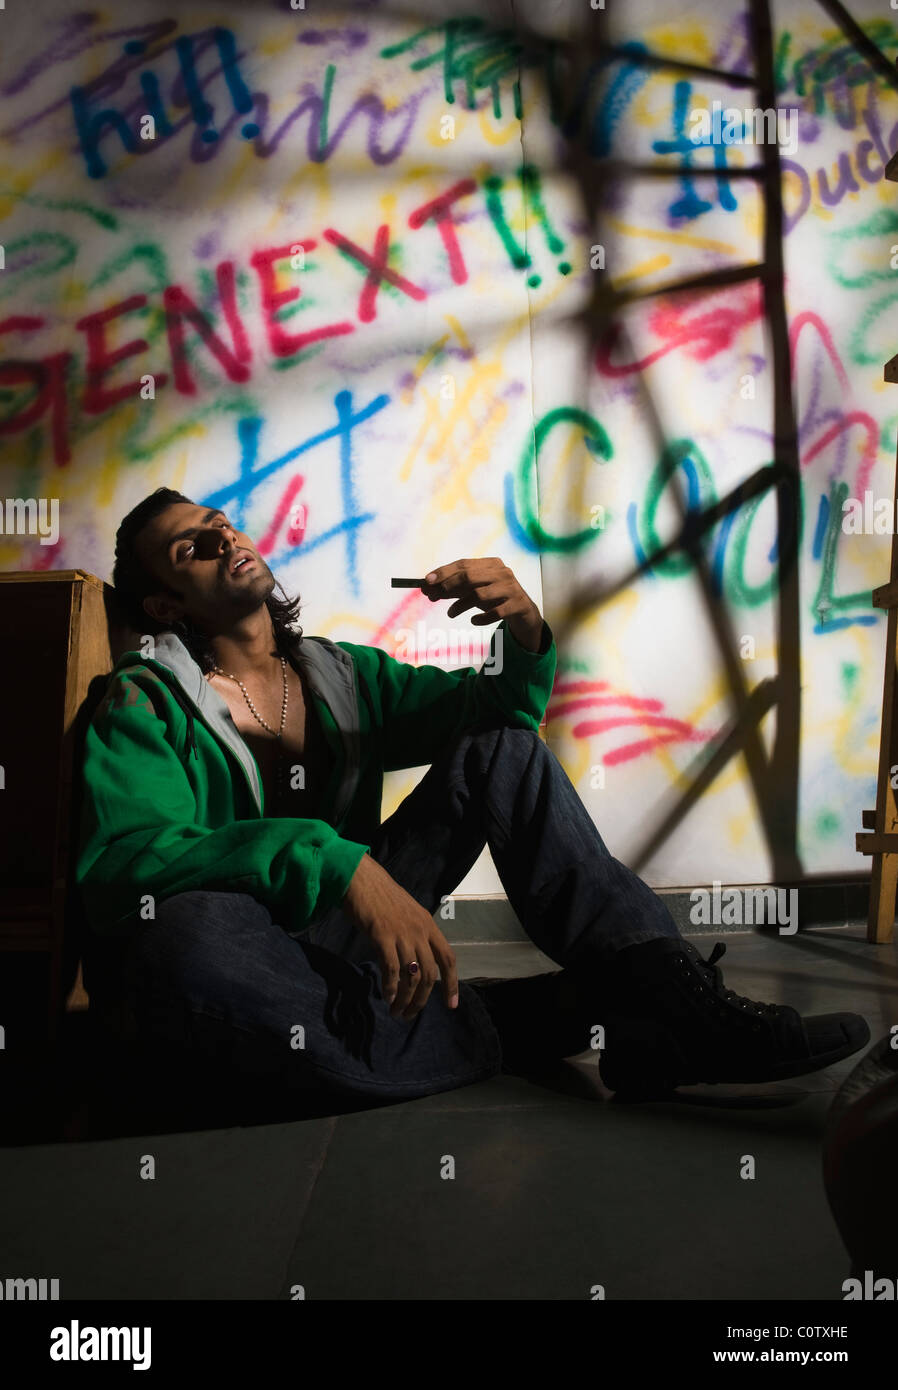 Drogadicto hombre sentado delante de una pared cubierta de graffiti Foto de stock